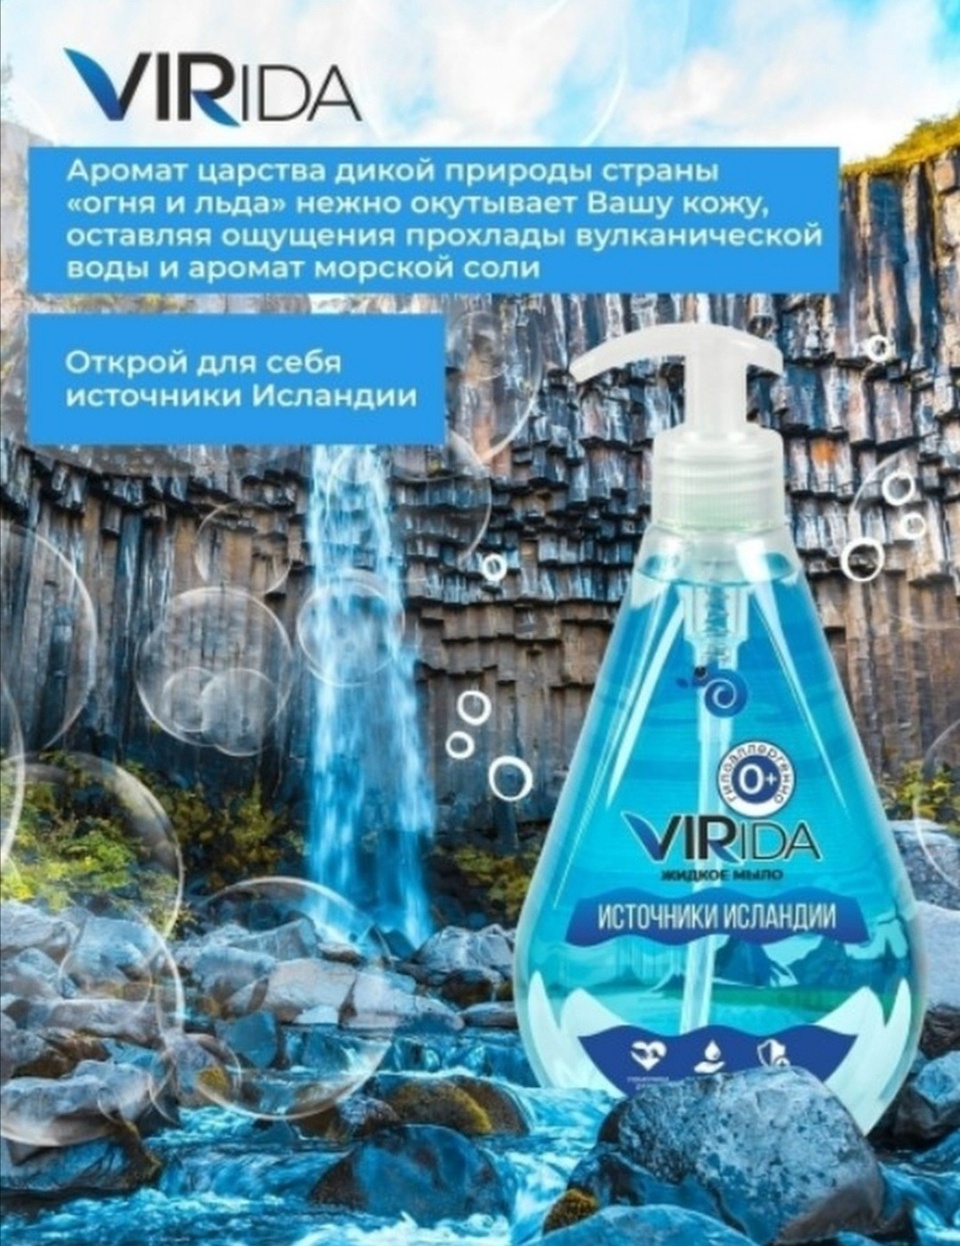 Virida жидкое мыло источники Исландии - 180 ₽, заказать онлайн.